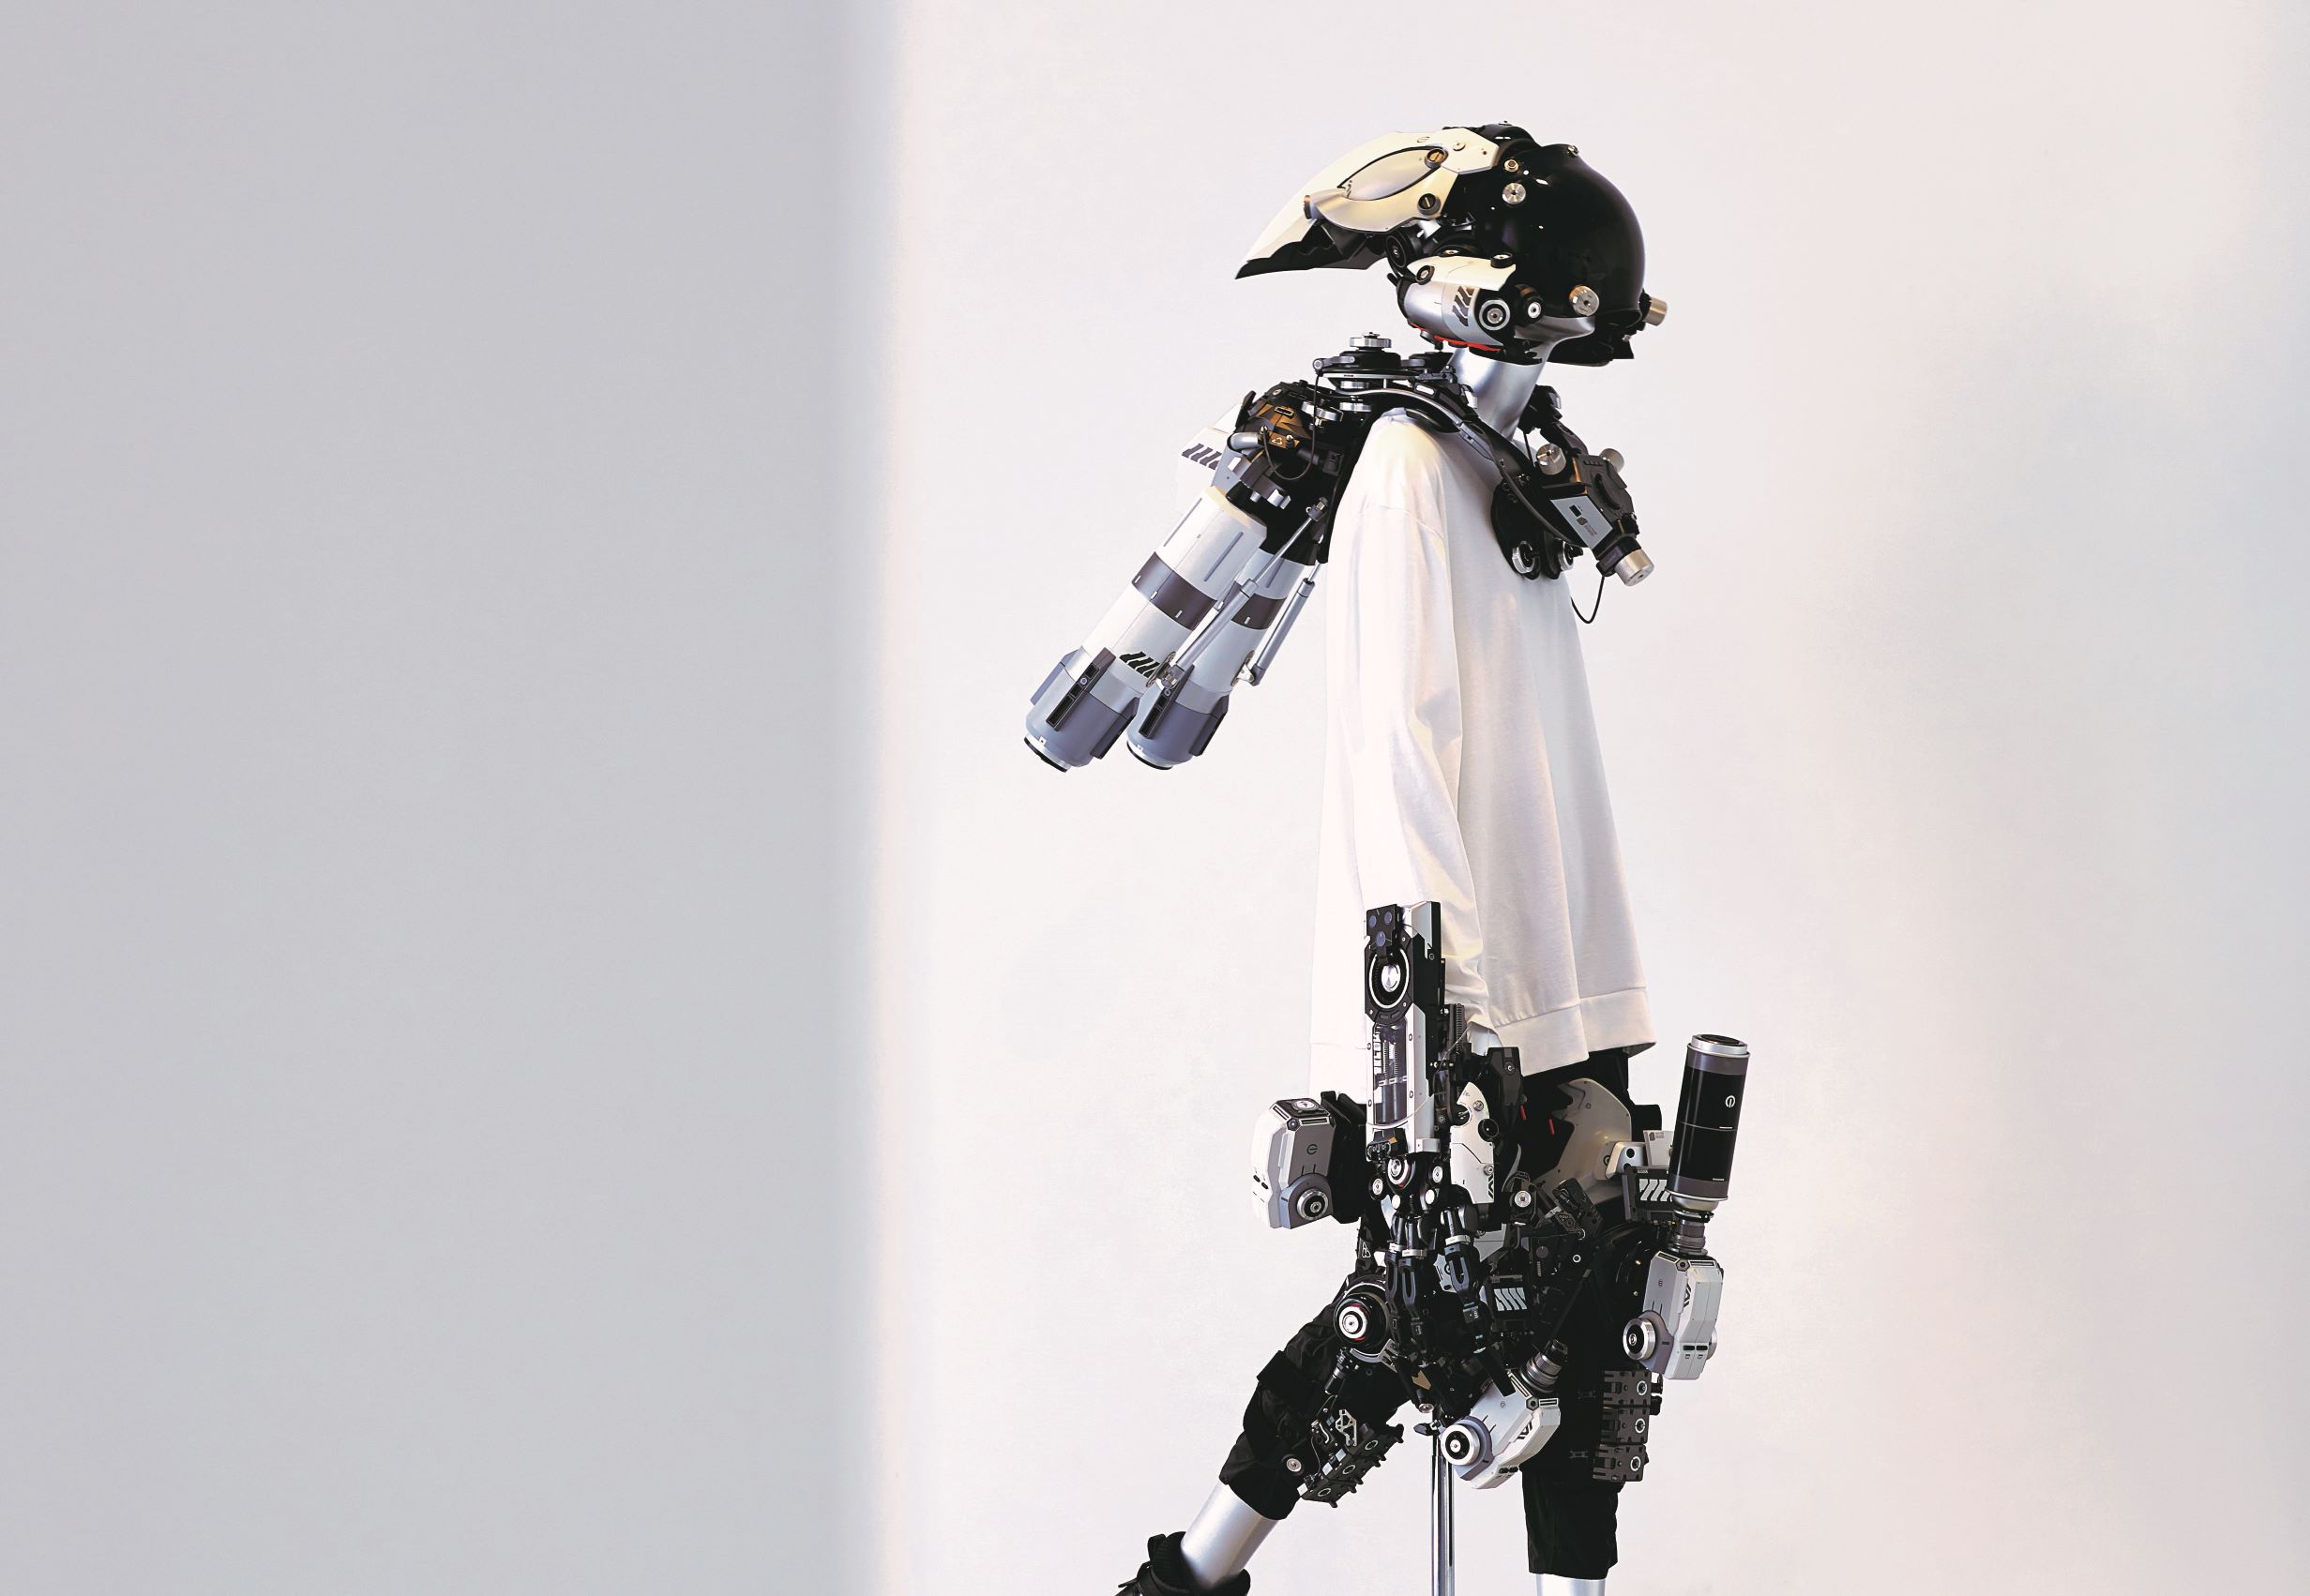 人檯模特兒穿上池內啟人與日本機器製造商 Skeletonics 一同打造的可穿戴外骨骼機械手臂，極有可能就是人類未來的模樣。